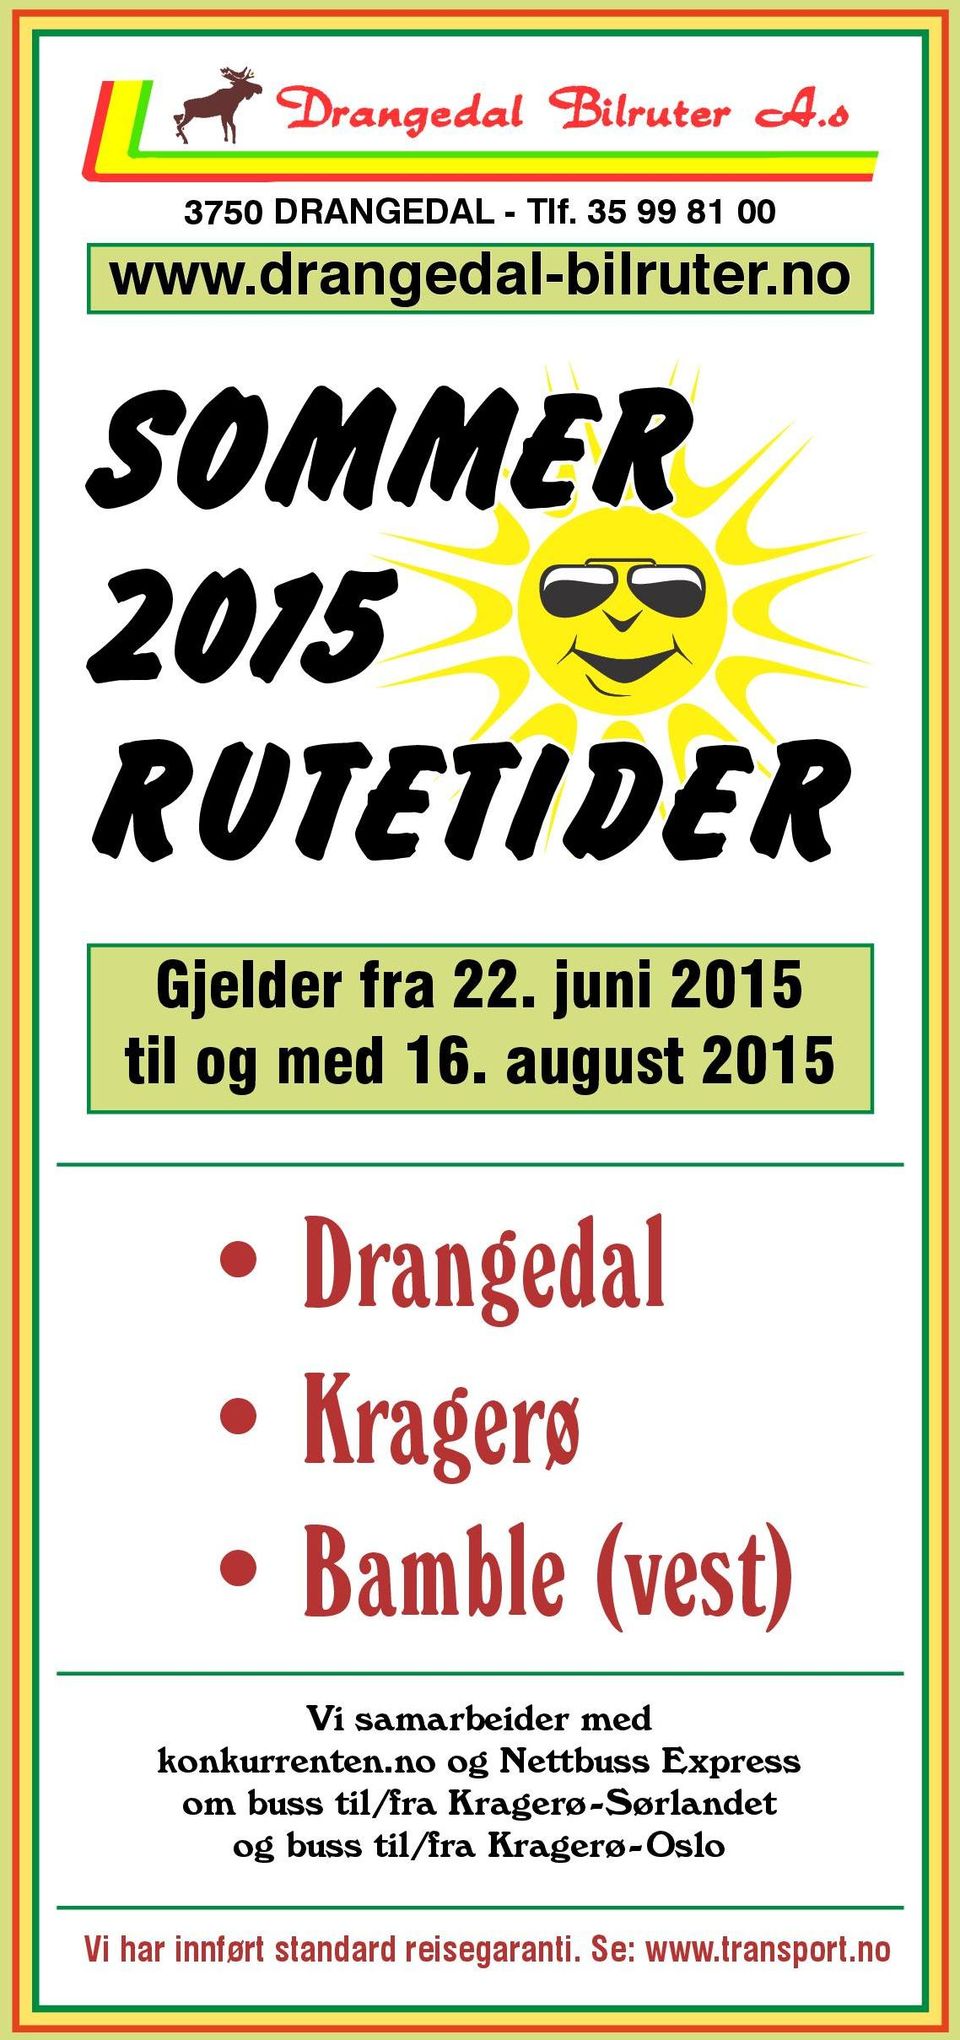 august 2015 Drangedal Kragerø Bamble (vest) Vi samarbeider med konkurrenten.